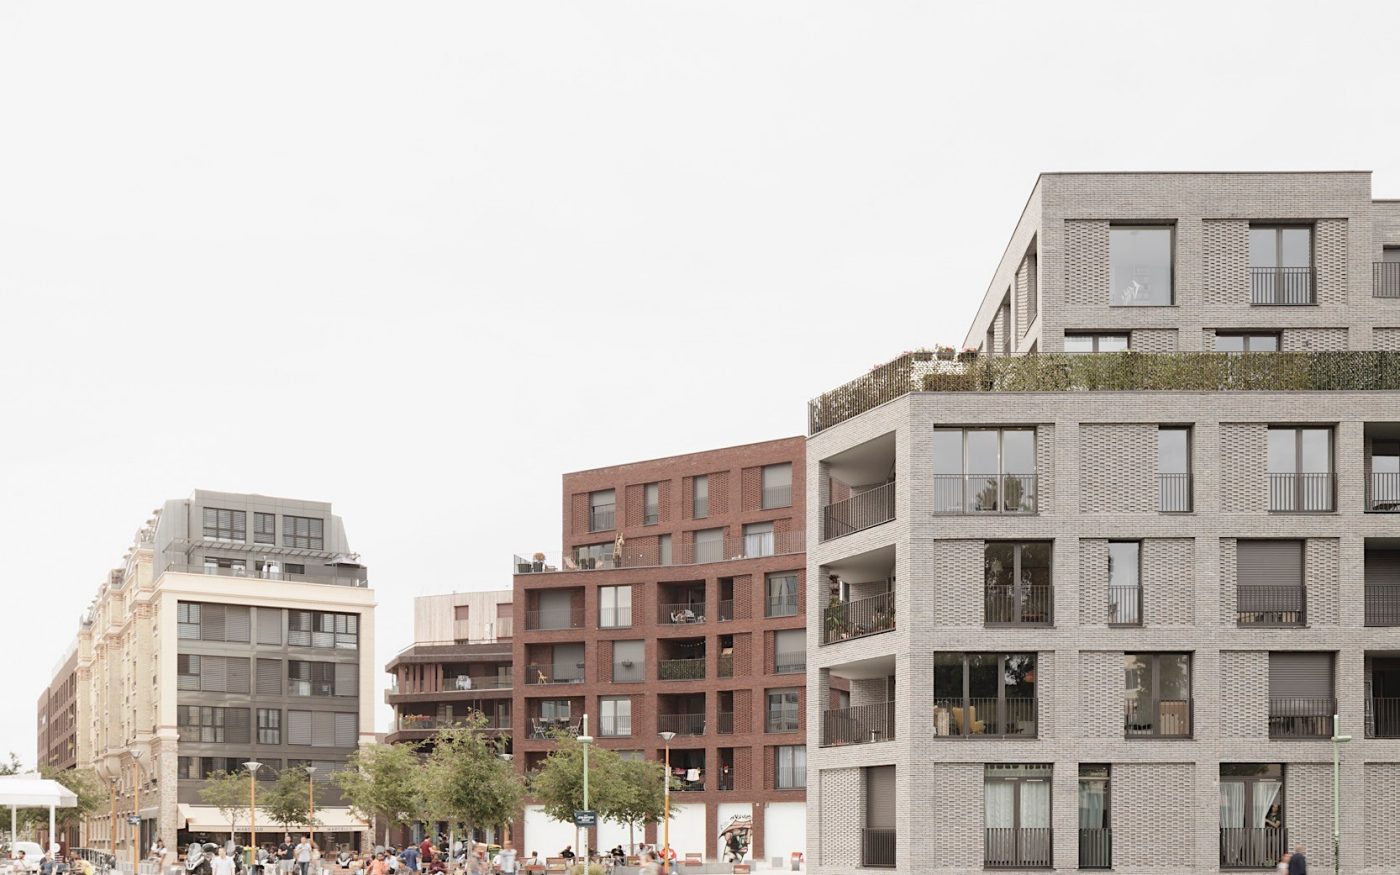 Lot de 88 logements à Paris (75), conçu par le cabinet Avenier Cornejo Architectes - Crédit photo : Schnepp Renou, Charlotte Toscan, Simone Bossi, Avenier Cornejo